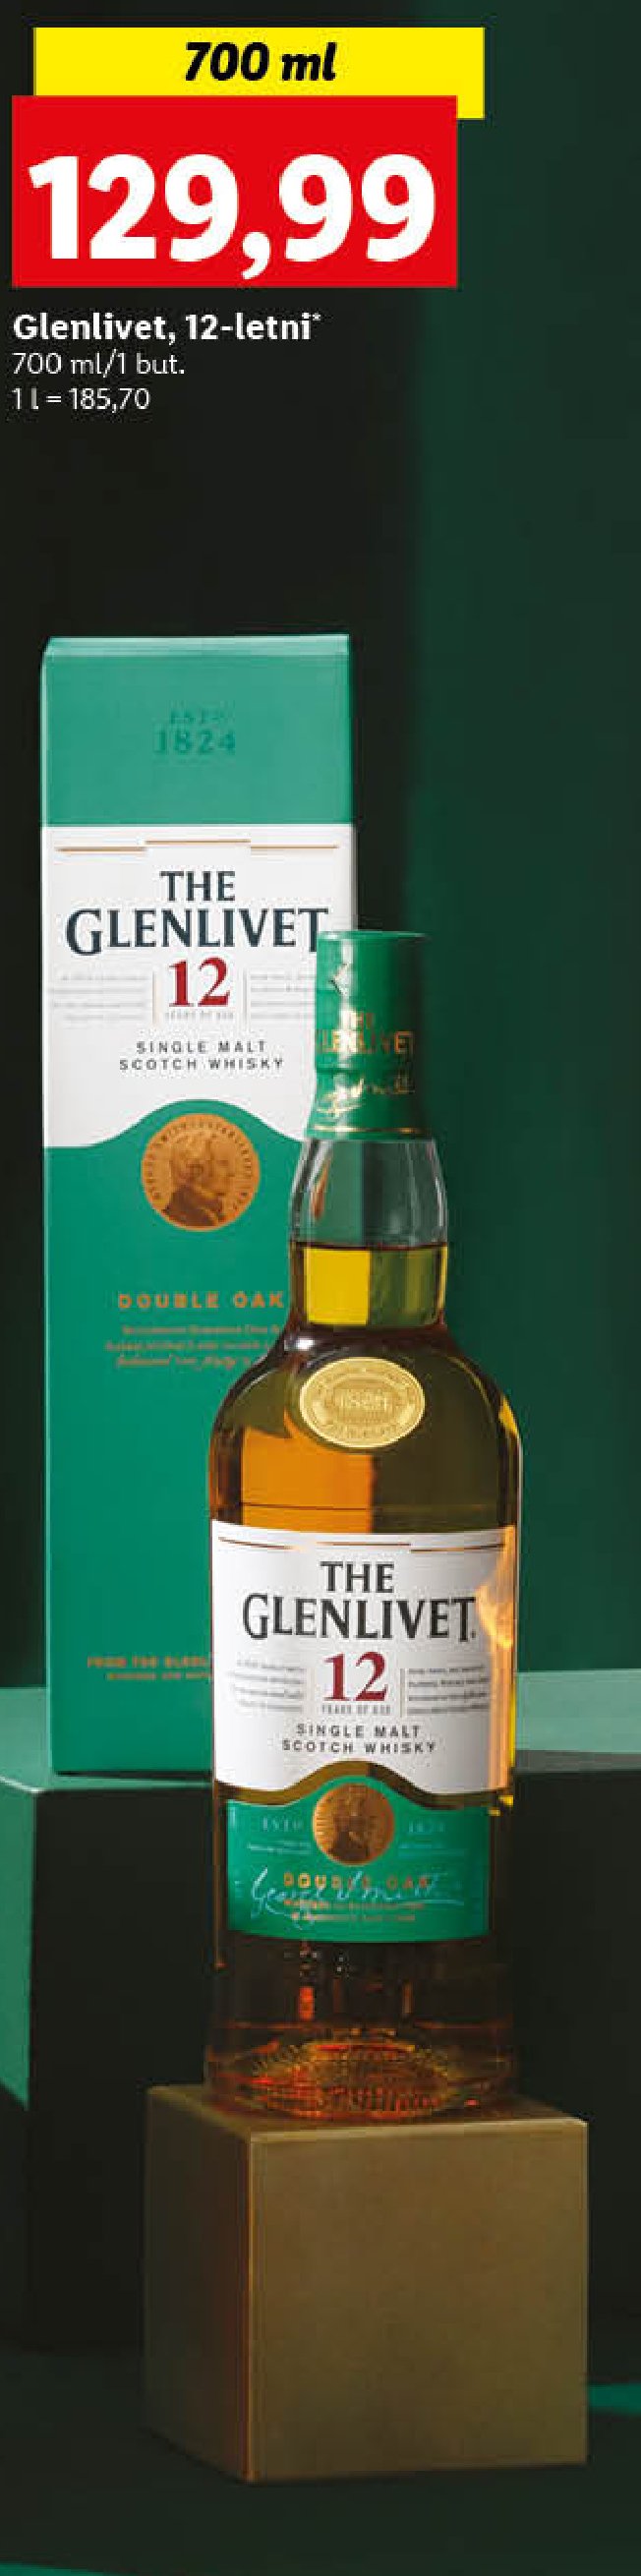 Whisky The glenlivet 12 yo promocja